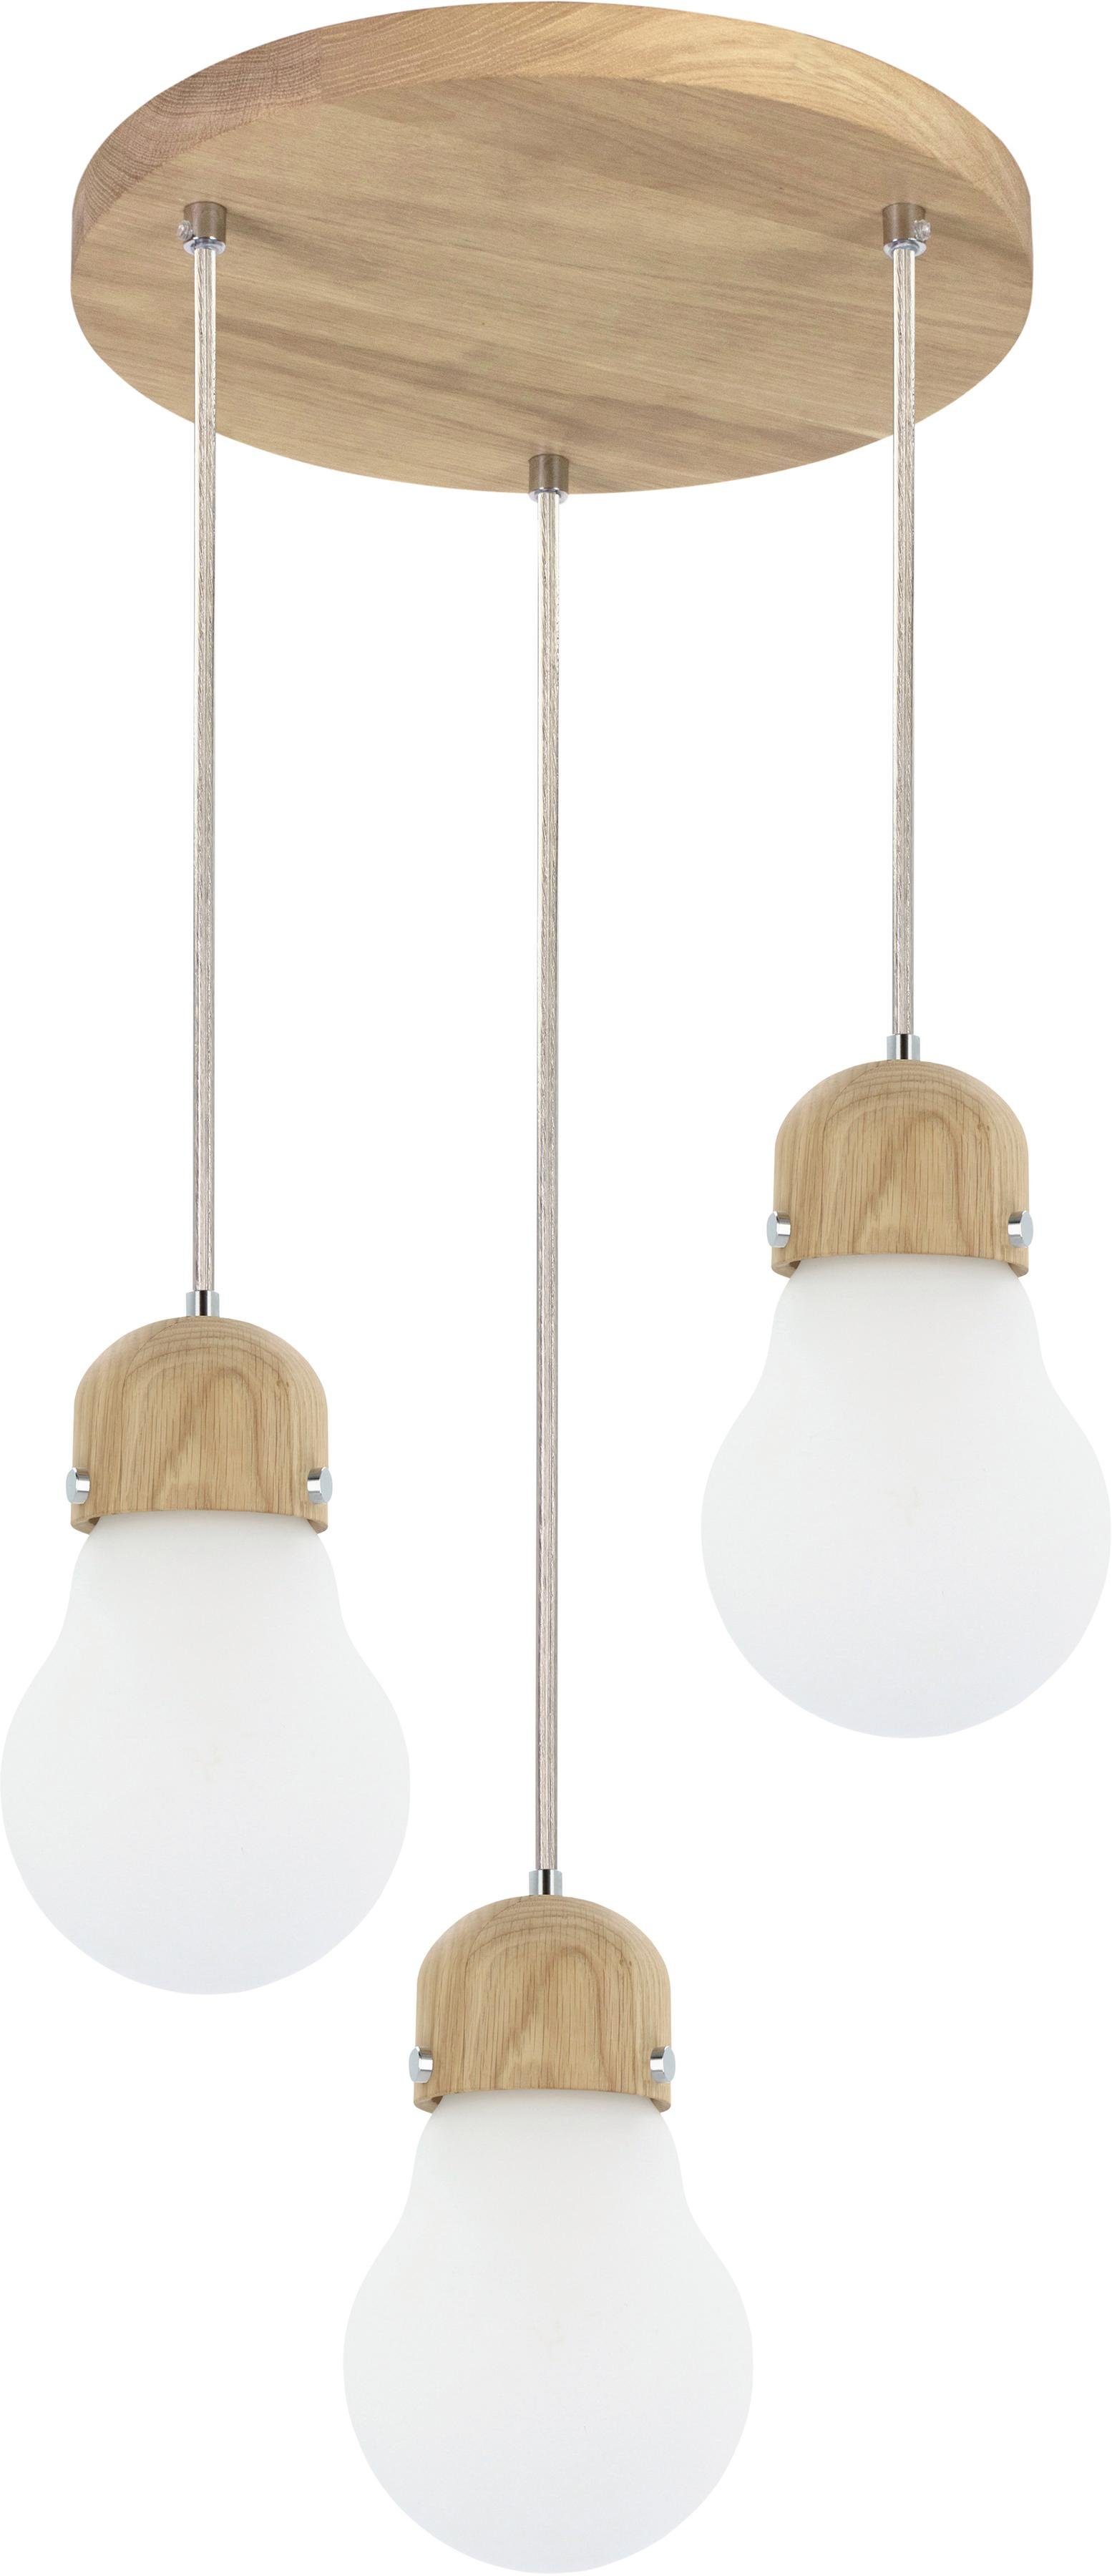 BRITOP LIGHTING Hanglamp Bulb WOOD Hanglamp, natuurproduct van eikenhout, duurzaam met FSC®-certificaat, hoogwaardige kap van glas, kabel in te korten, Made in EU